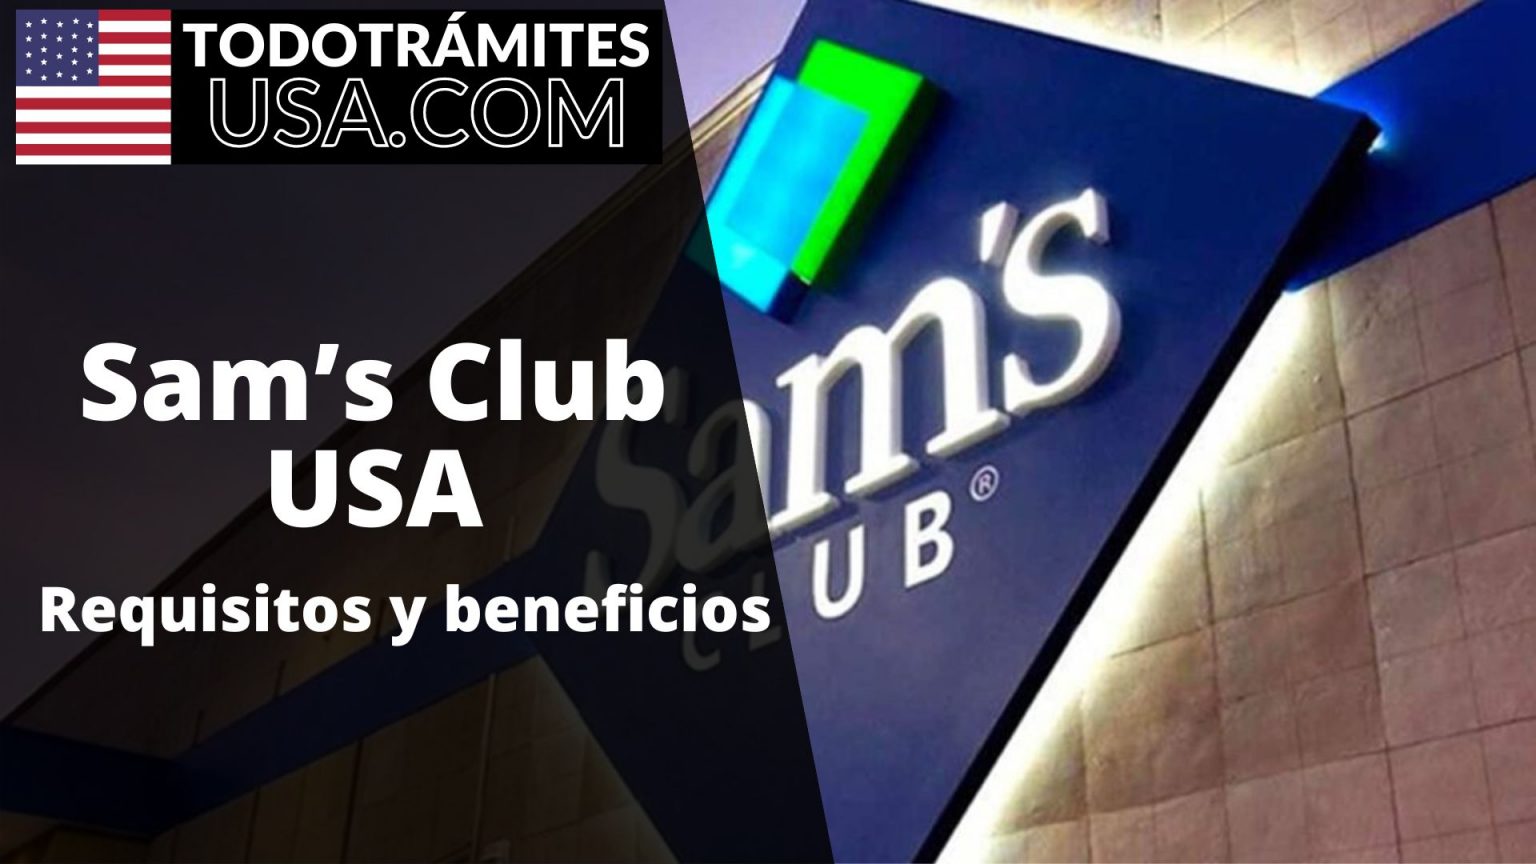 Sam’s Club USA: Requisitos y beneficios de afiliación